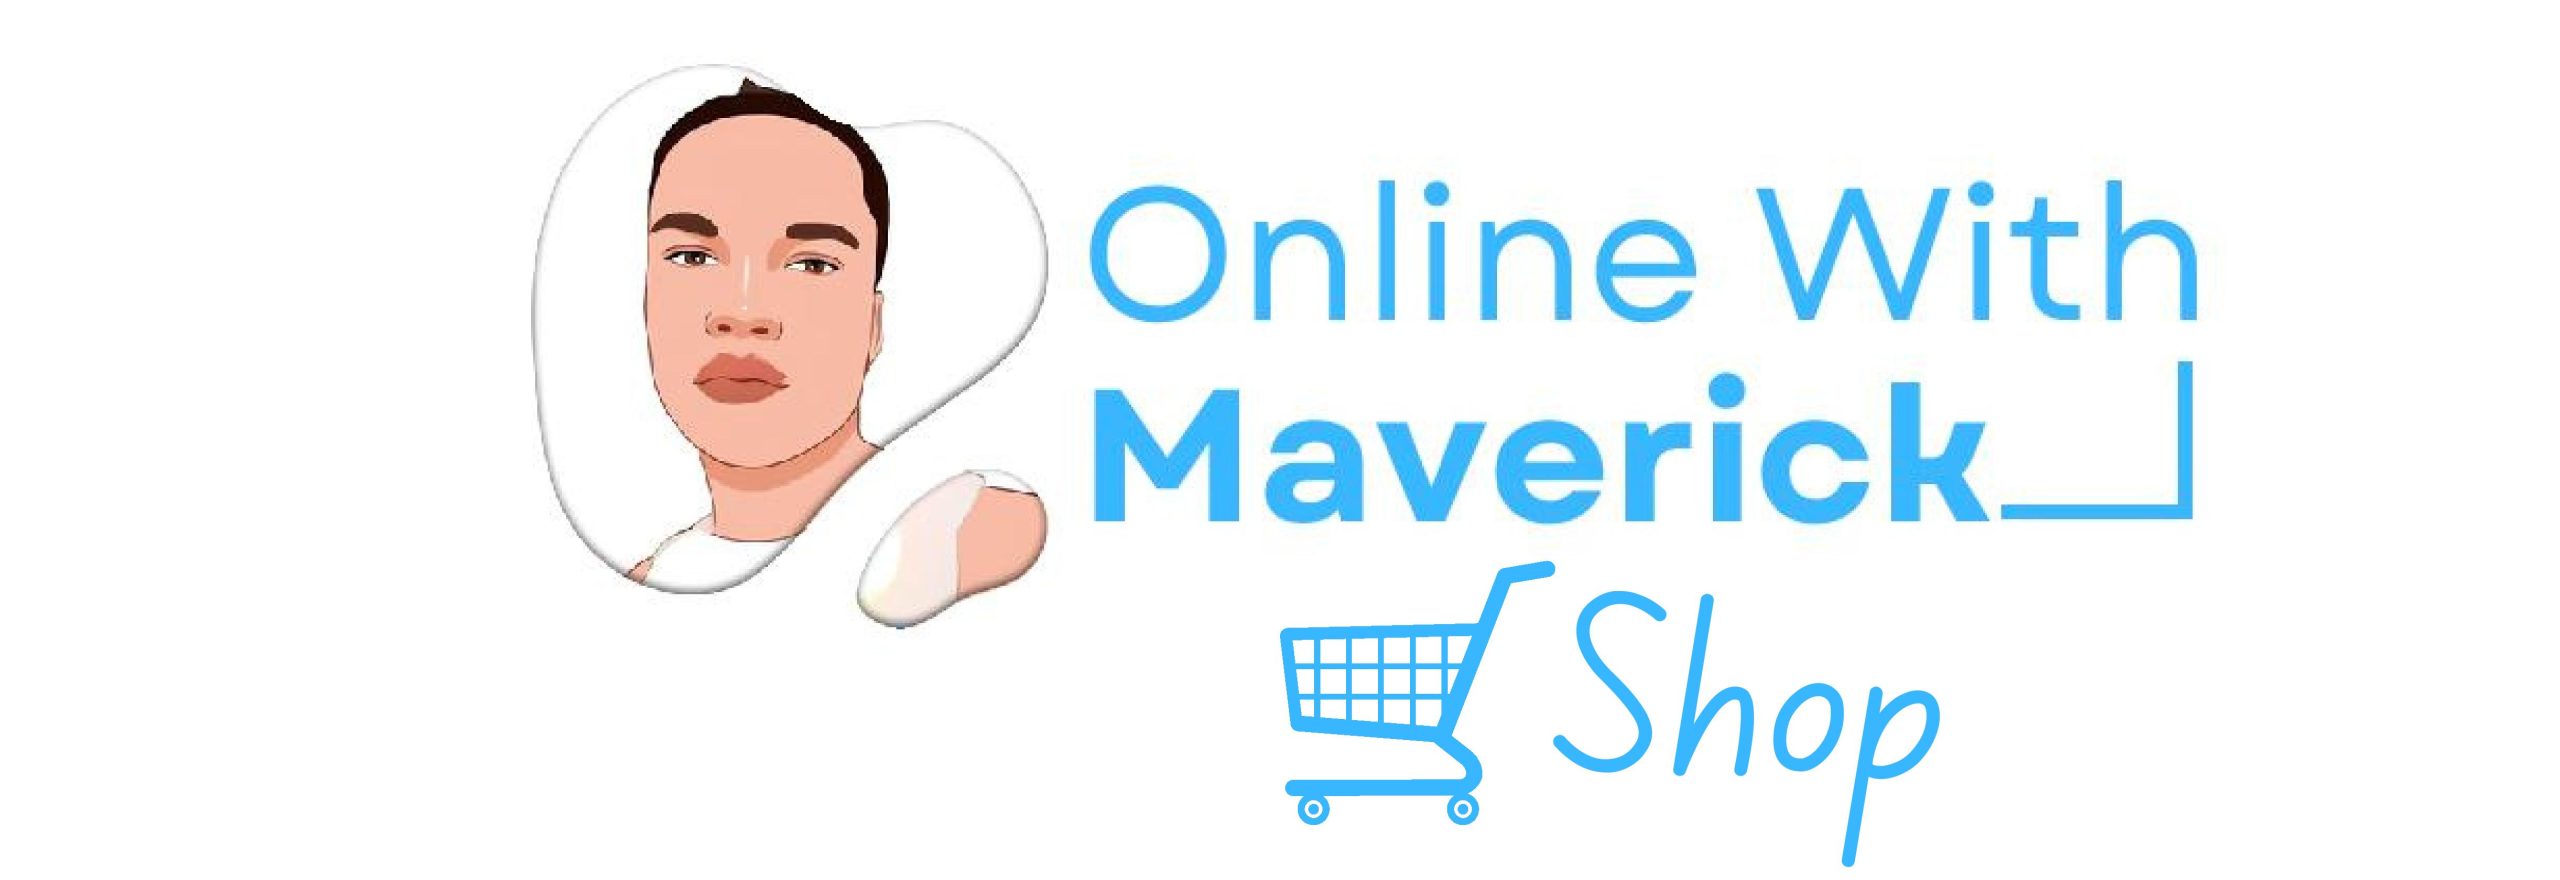 Online With Maverick Shop